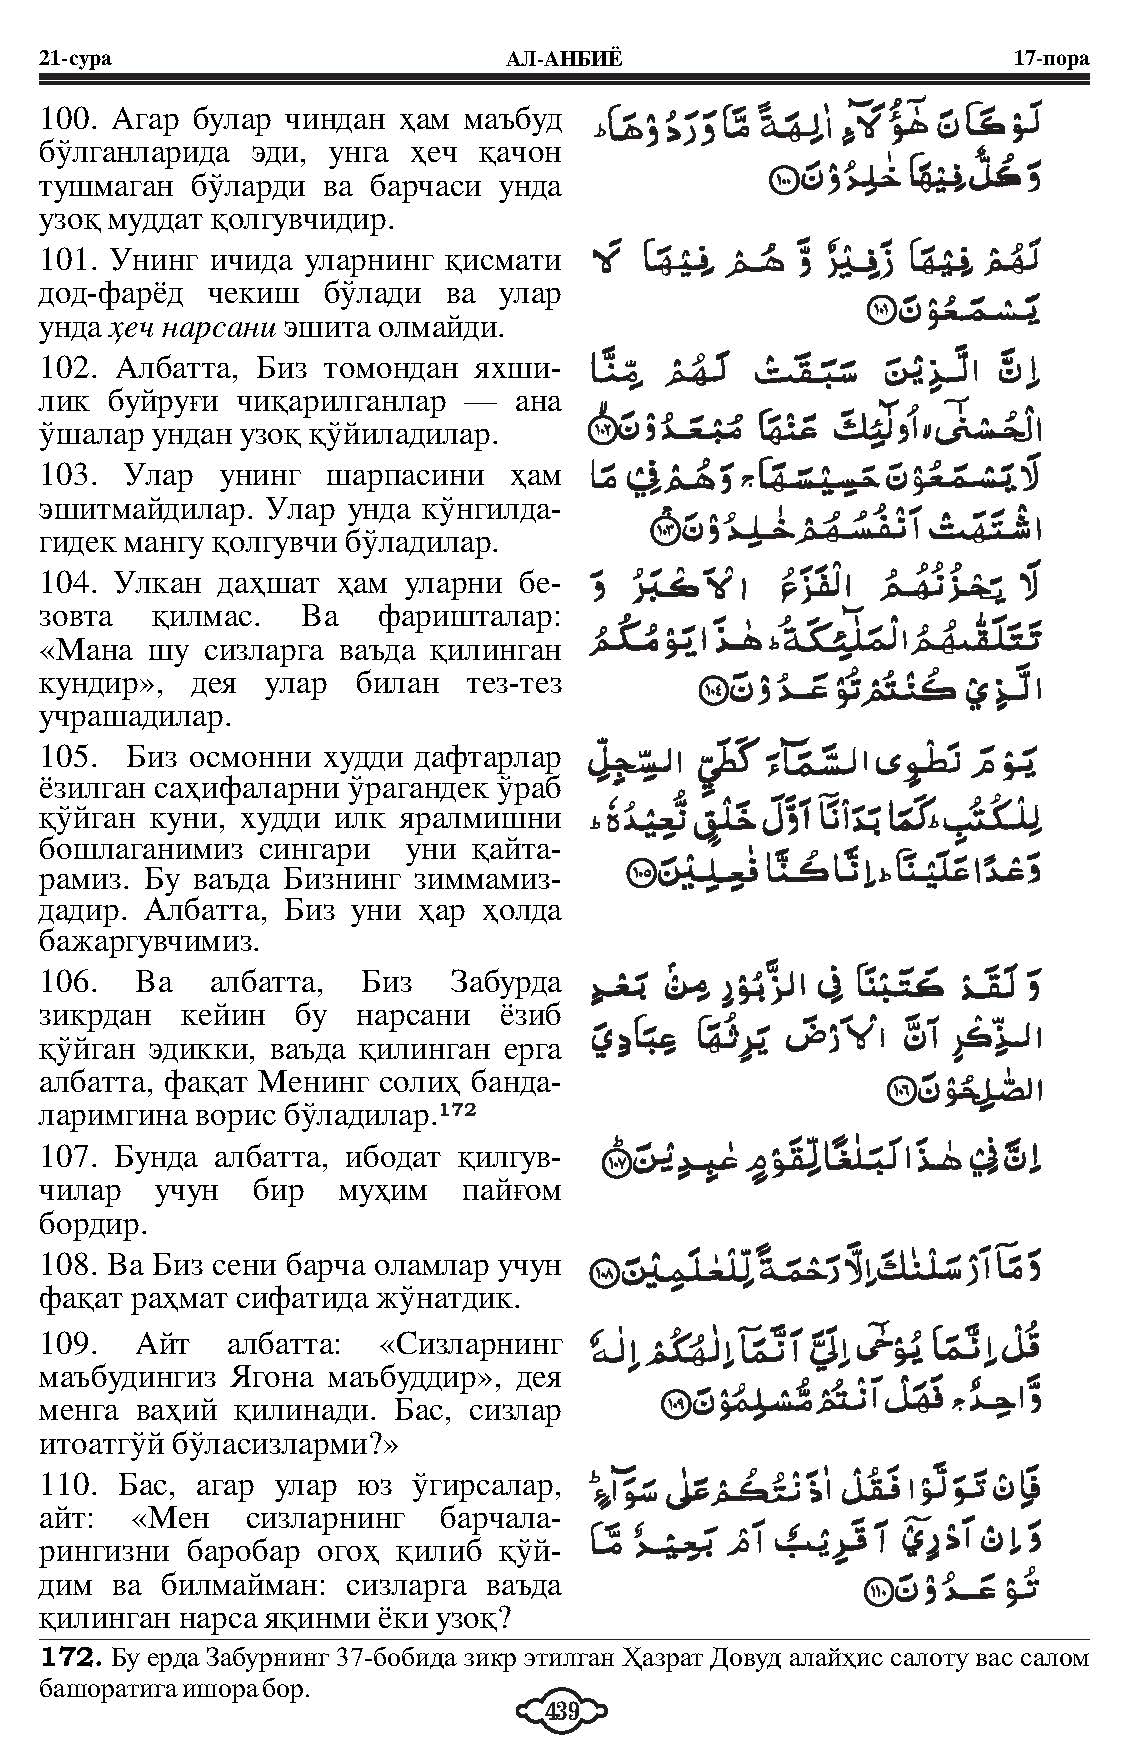 021-al-anbiya_Page_14